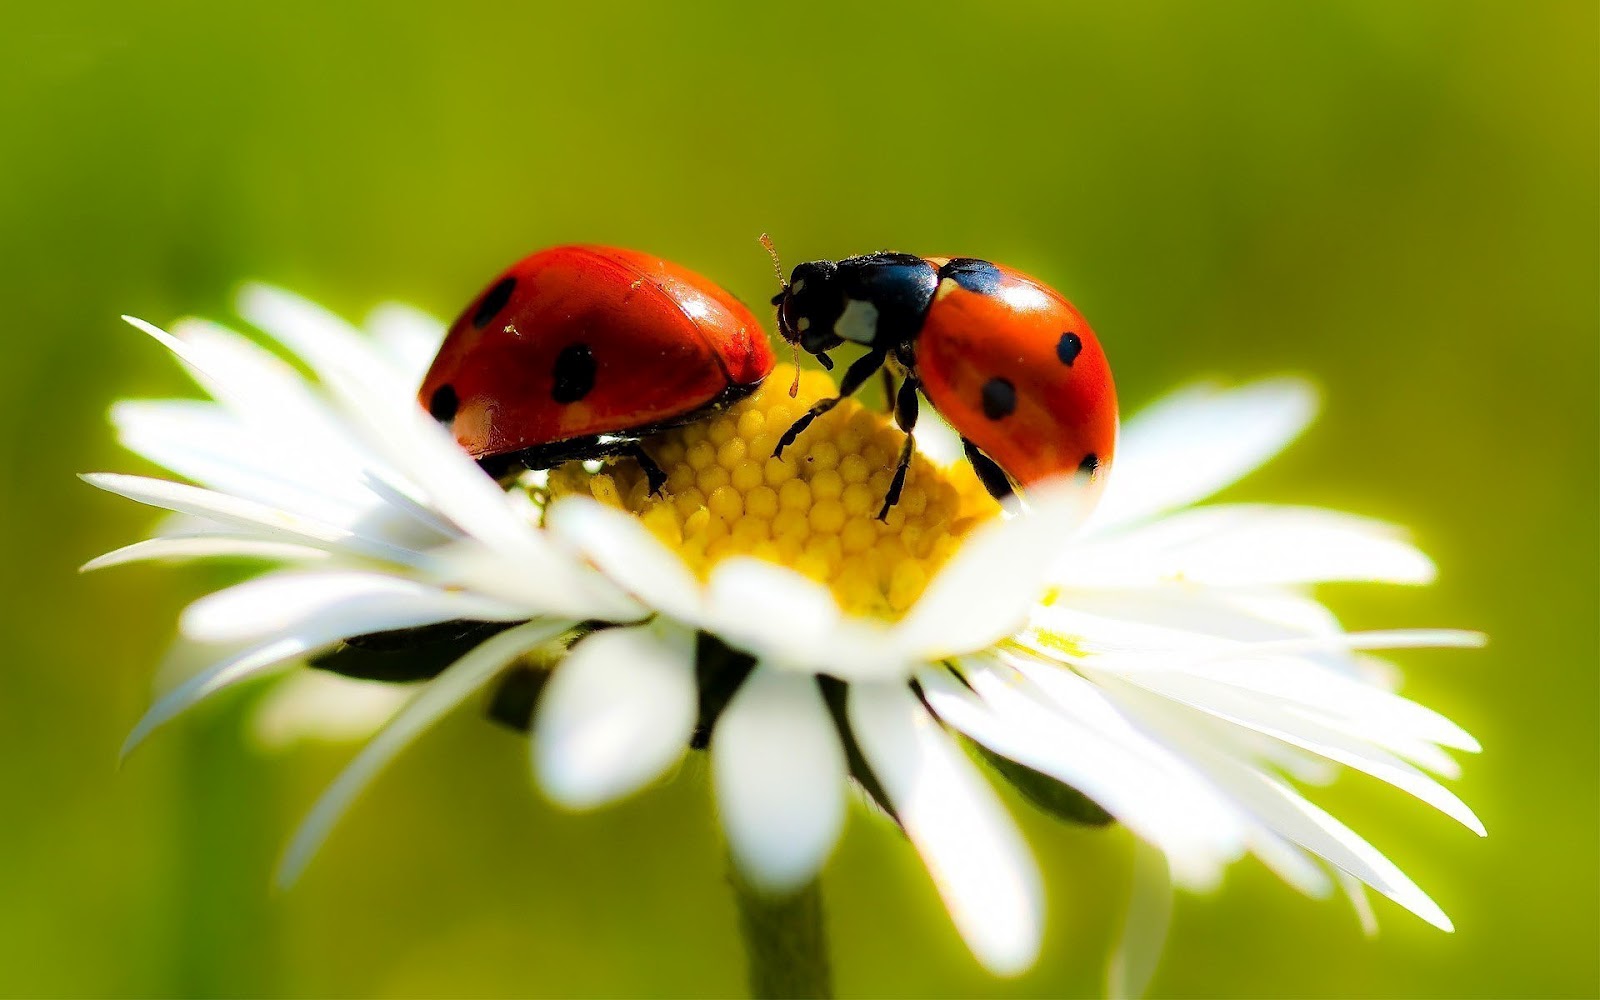 Ladybug High Resolution Wallpaper Cool Desktop Background Image